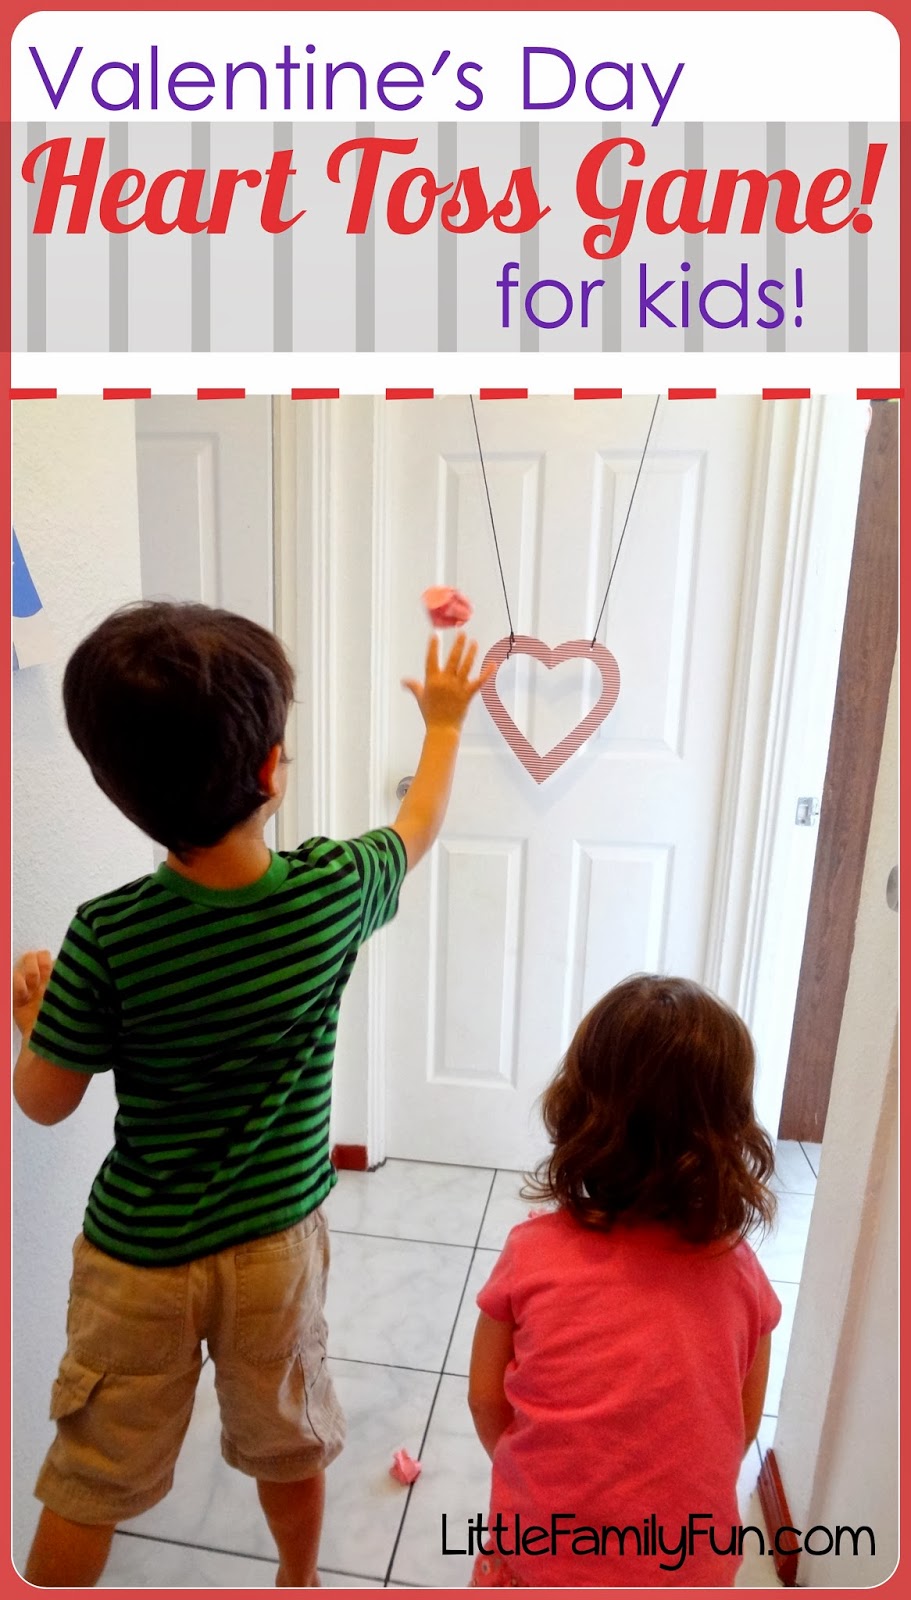 http://www.littlefamilyfun.com/2014/01/valentines-day-heart-toss-game.html